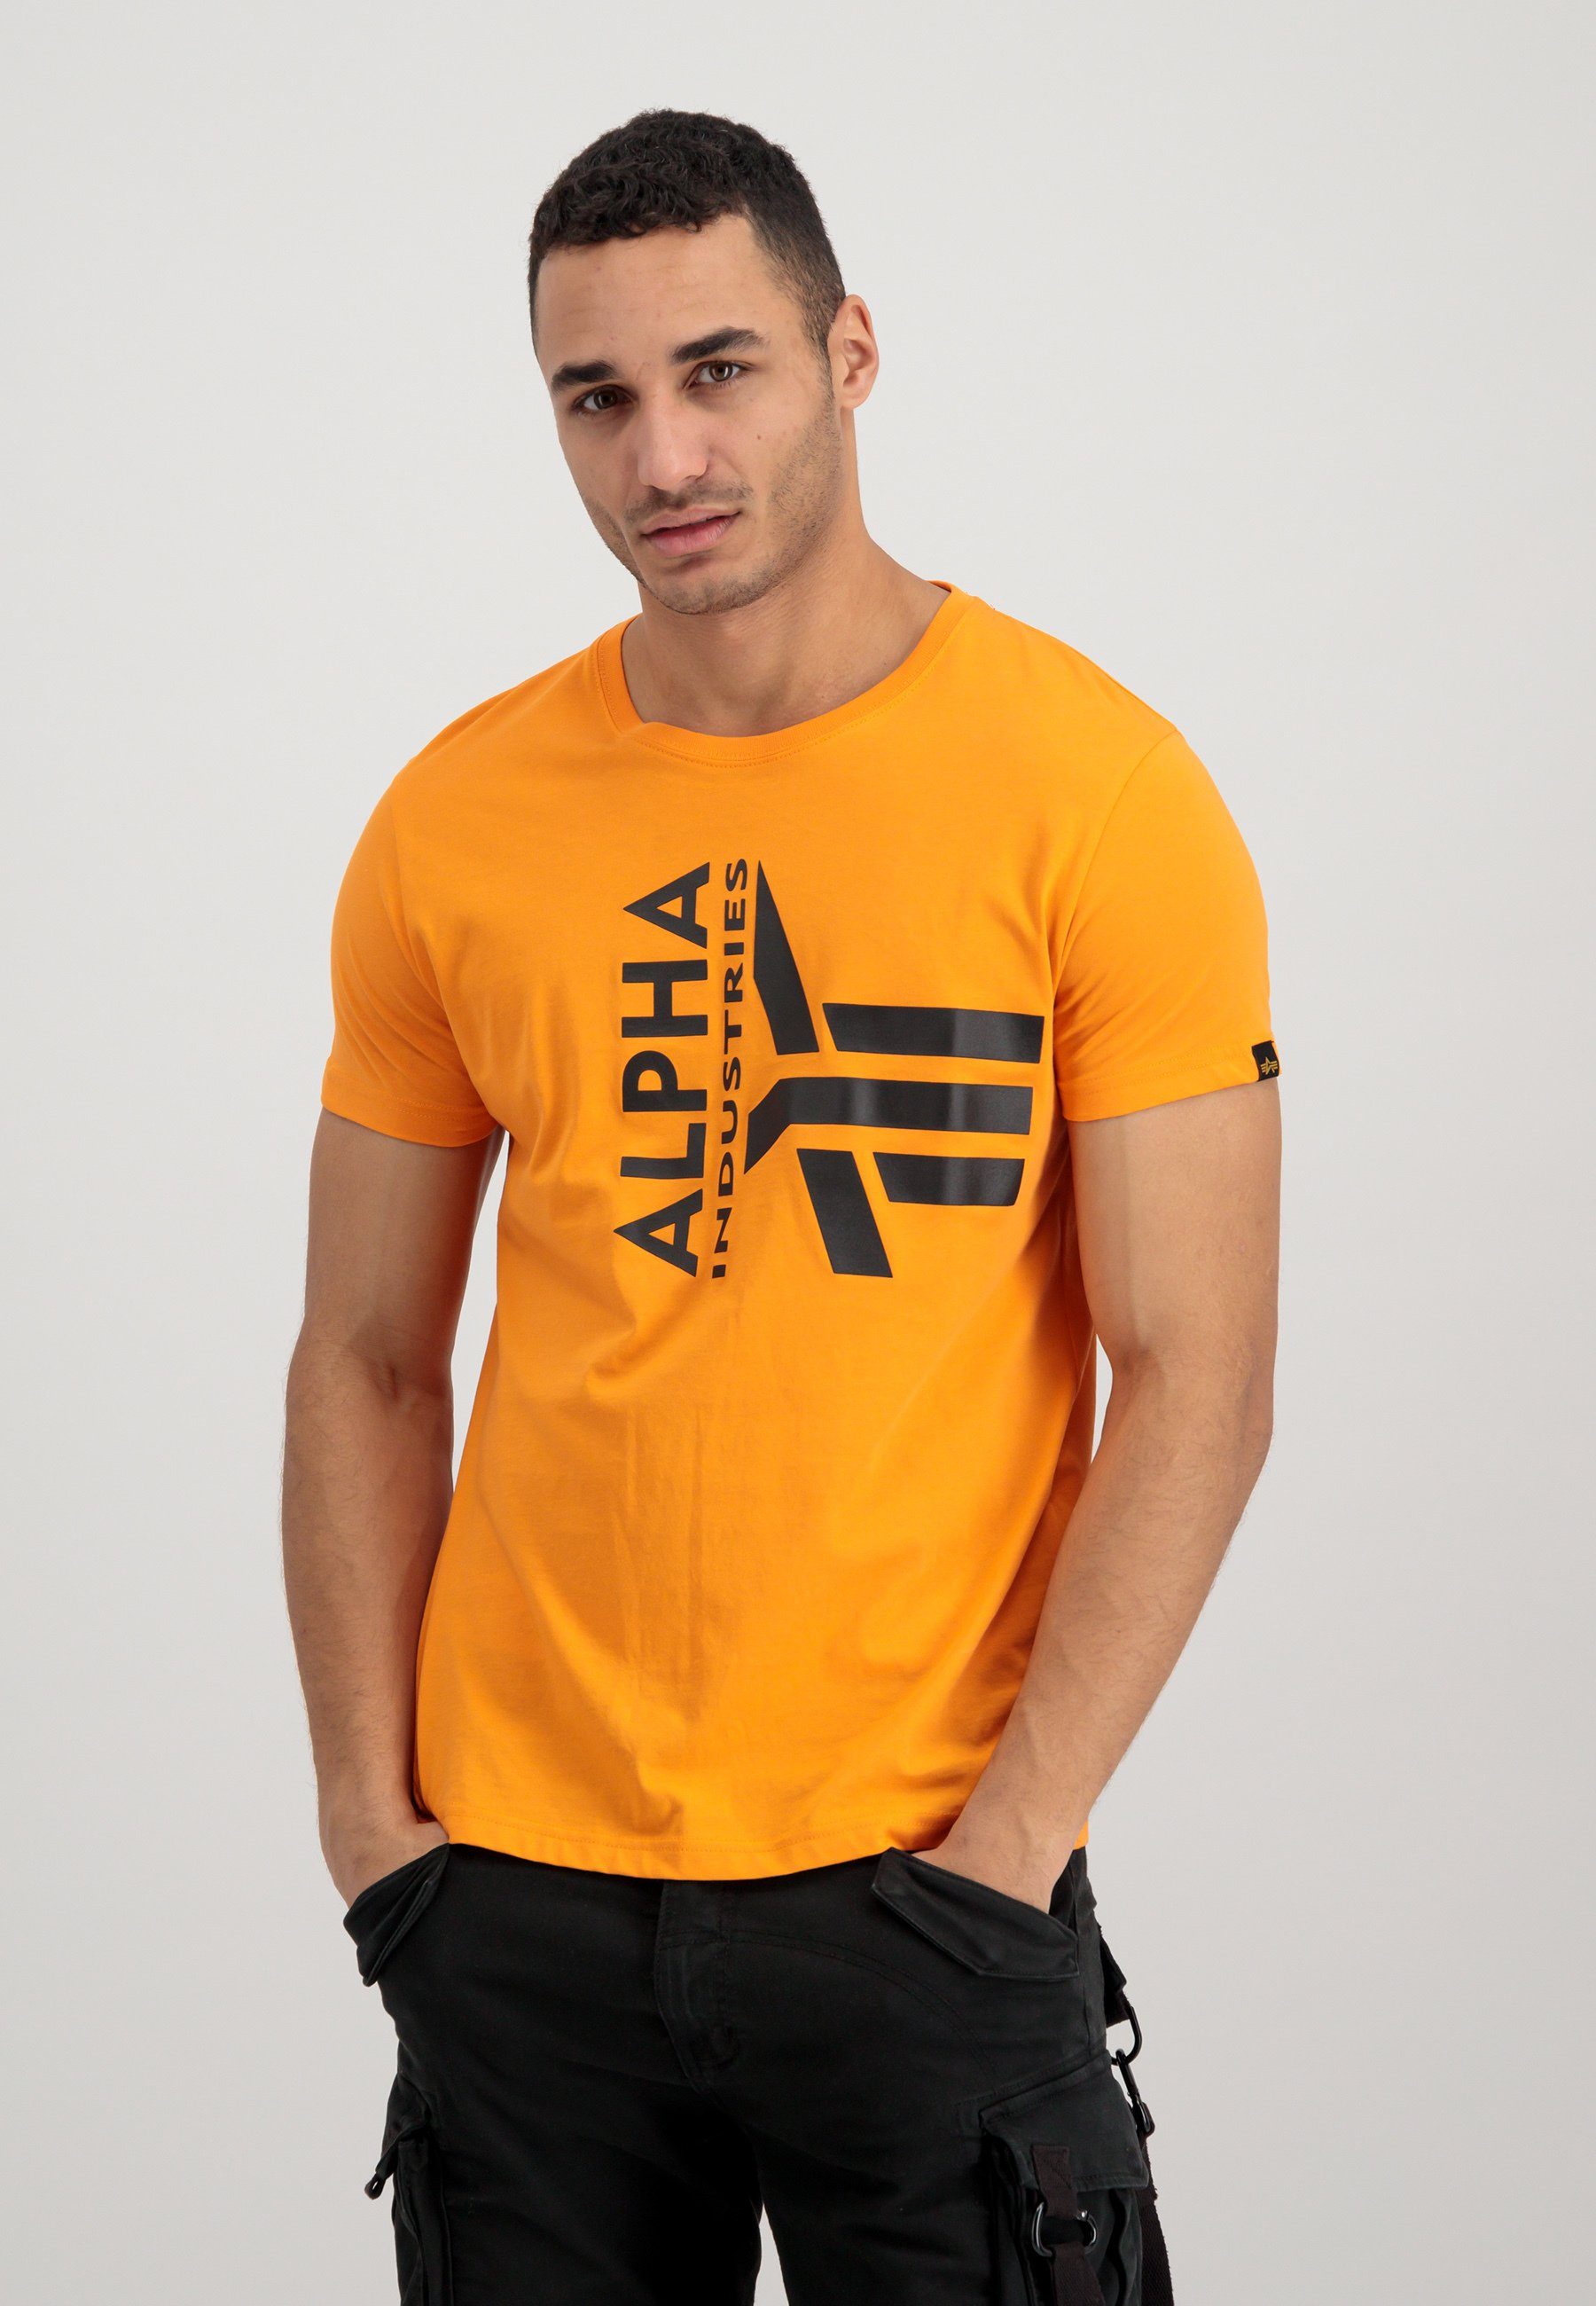 Half Alpha Men online OTTO Industries T-Shirts - T-shirt winkel Logo Industries Foam Alpha in T de |